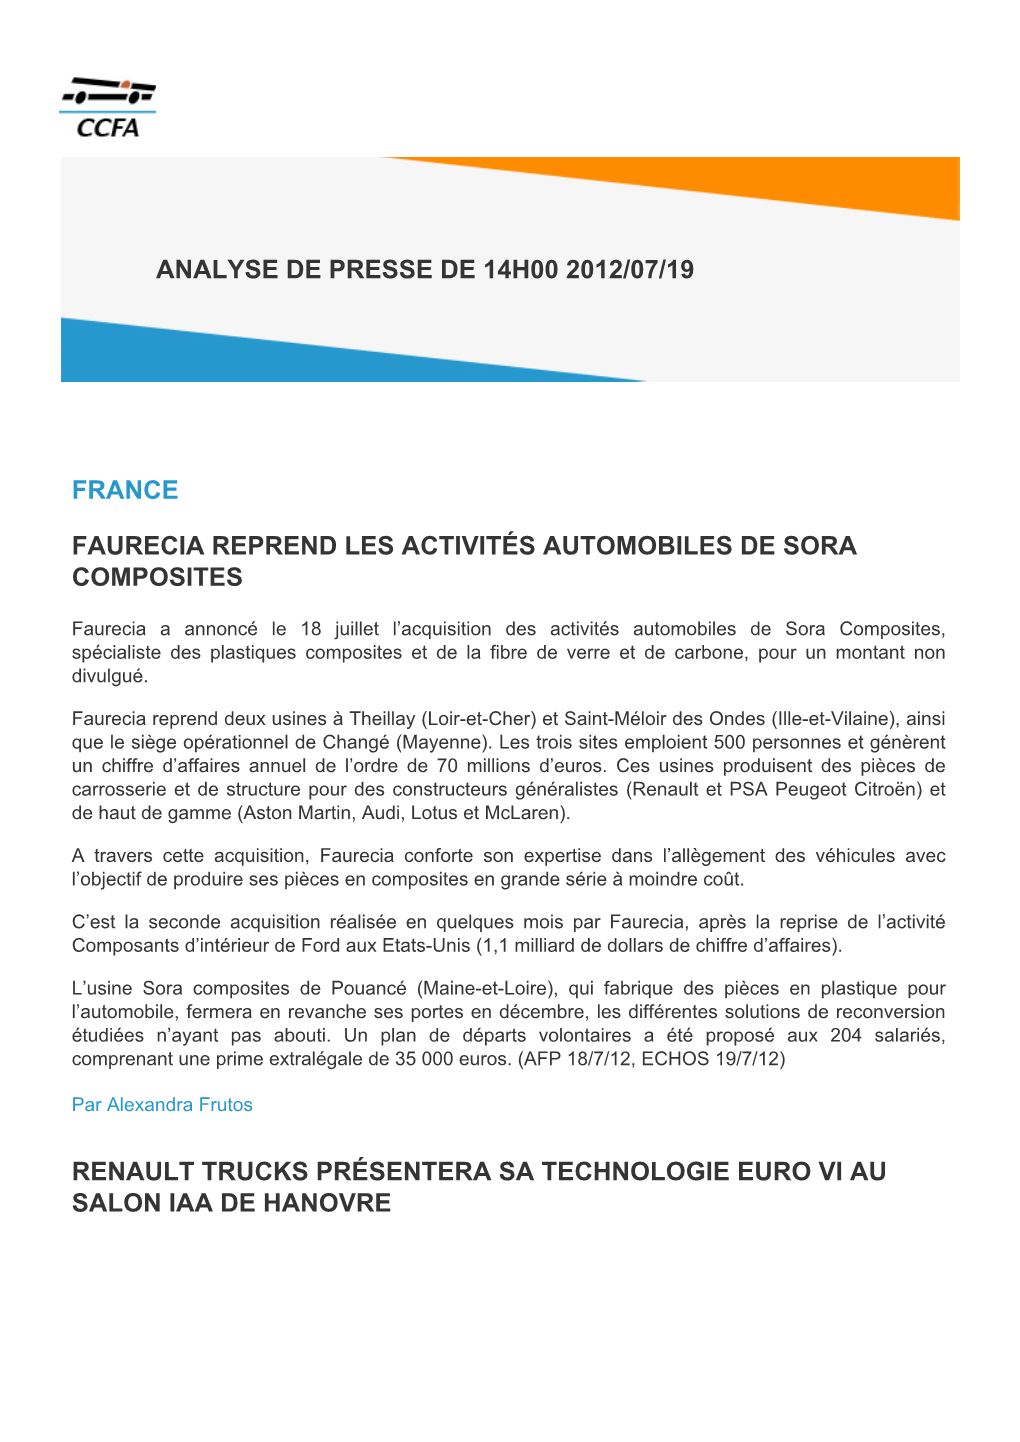 France Faurecia Reprend Les Activités Automobiles De